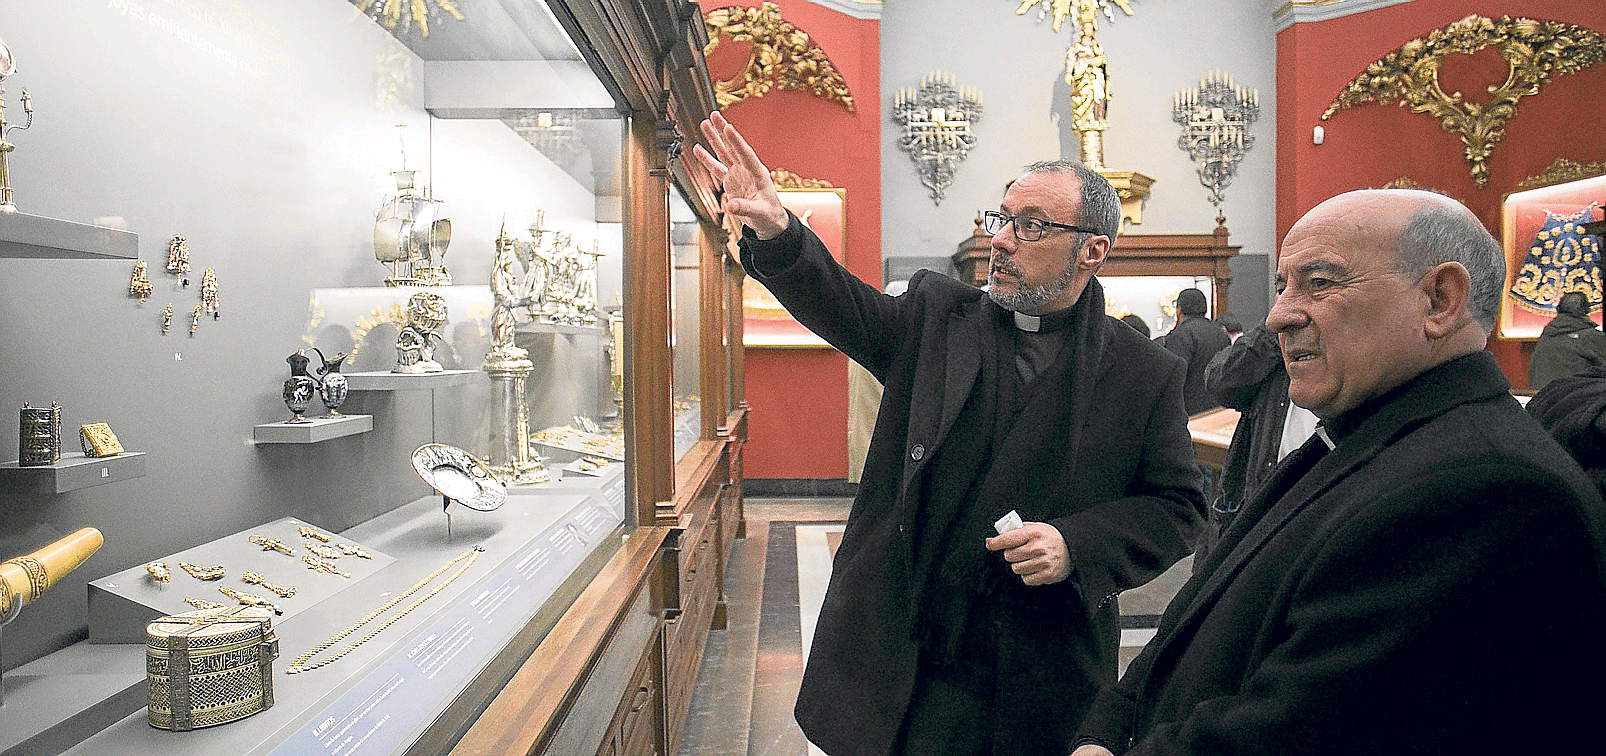 Ignacio Ruiz, director del patrimonio catedralicio, explica al arzobispo Vicente Jiménez las piezas más antiguas del museo